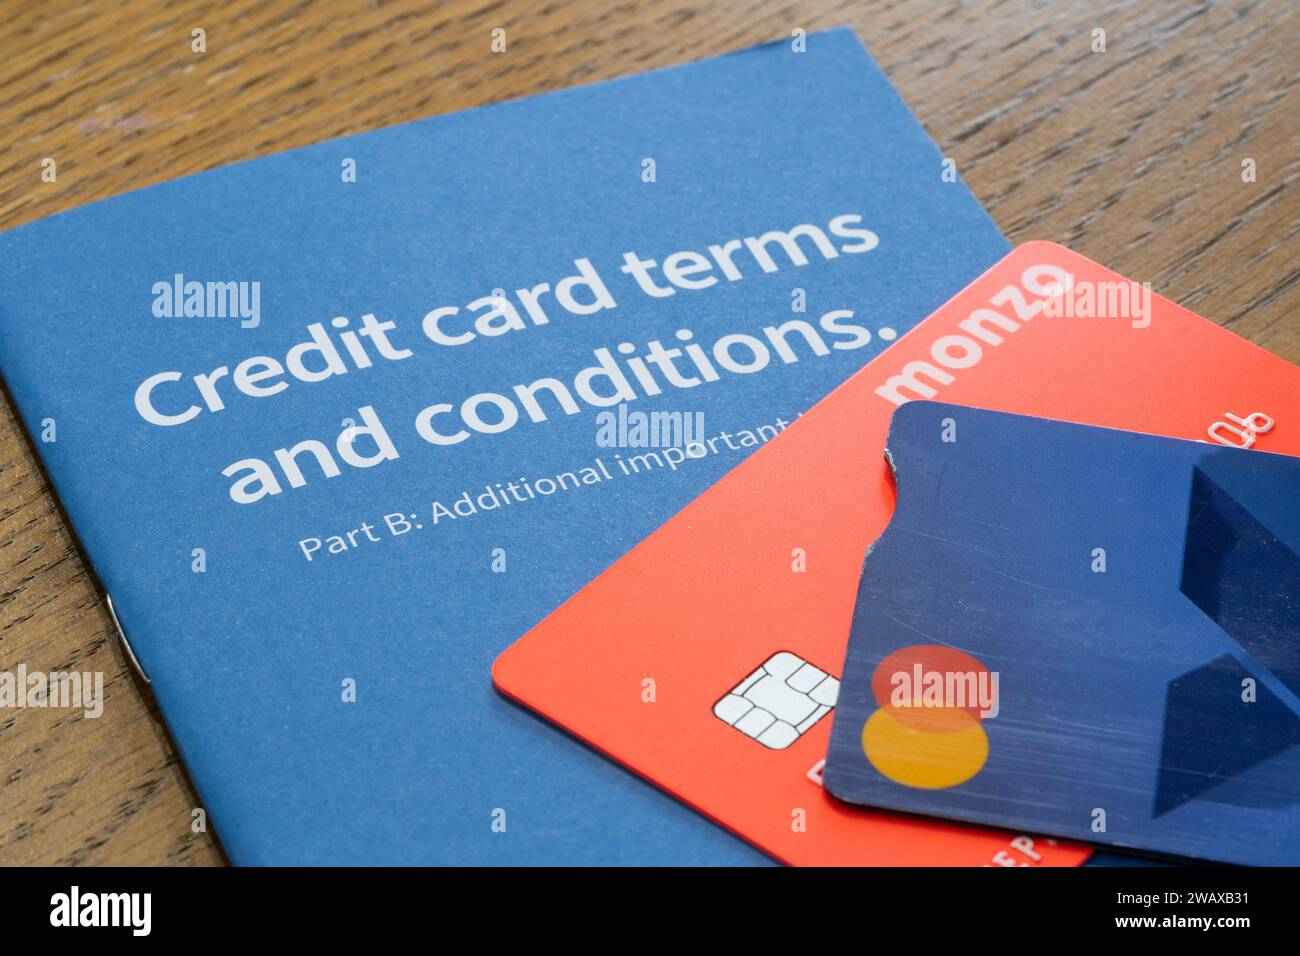 Ein Heft mit den Geschäftsbedingungen für Halifax-Kreditkarten, auf dem Kreditkarten angebracht sind. Thema: Britische Kreditkartenschulden, britische Verbraucherschulden, Kreditkartenrückzahlungen Stockfoto